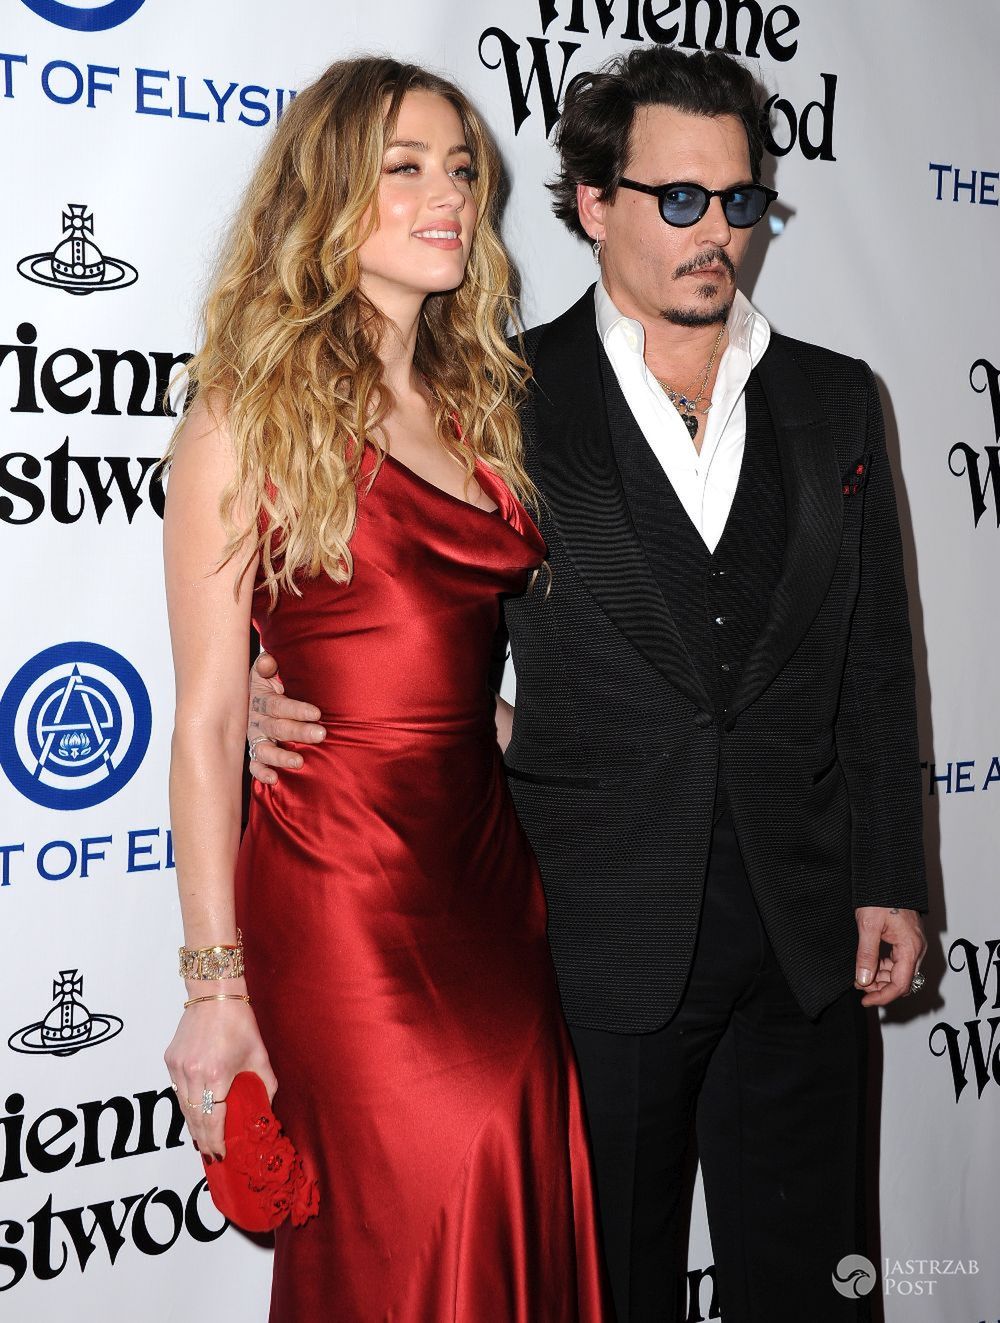 Johnny Depp i Amber Heard rozwodzą się po 15 miesiącach małżeństwa